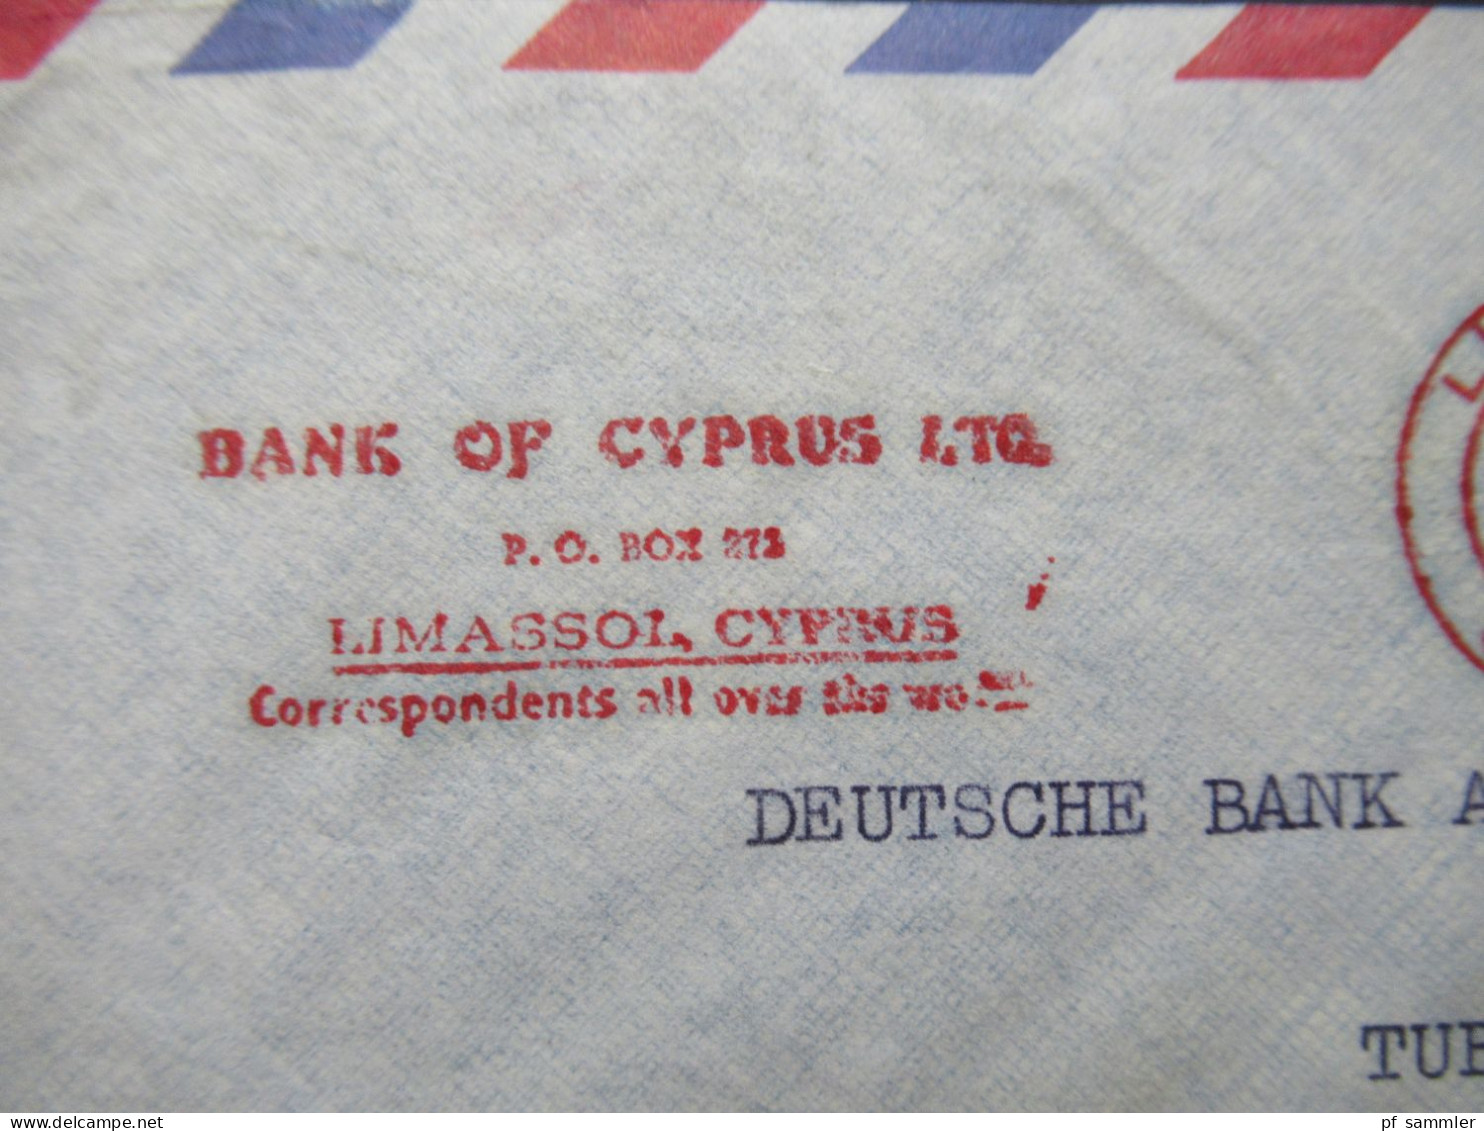 Zypern 1961 Par Avion Auslandsbrief Nach Tübingen Mit Freistempel AFS Limasol Cyprus Bank Of Cyprus LTD - Covers & Documents